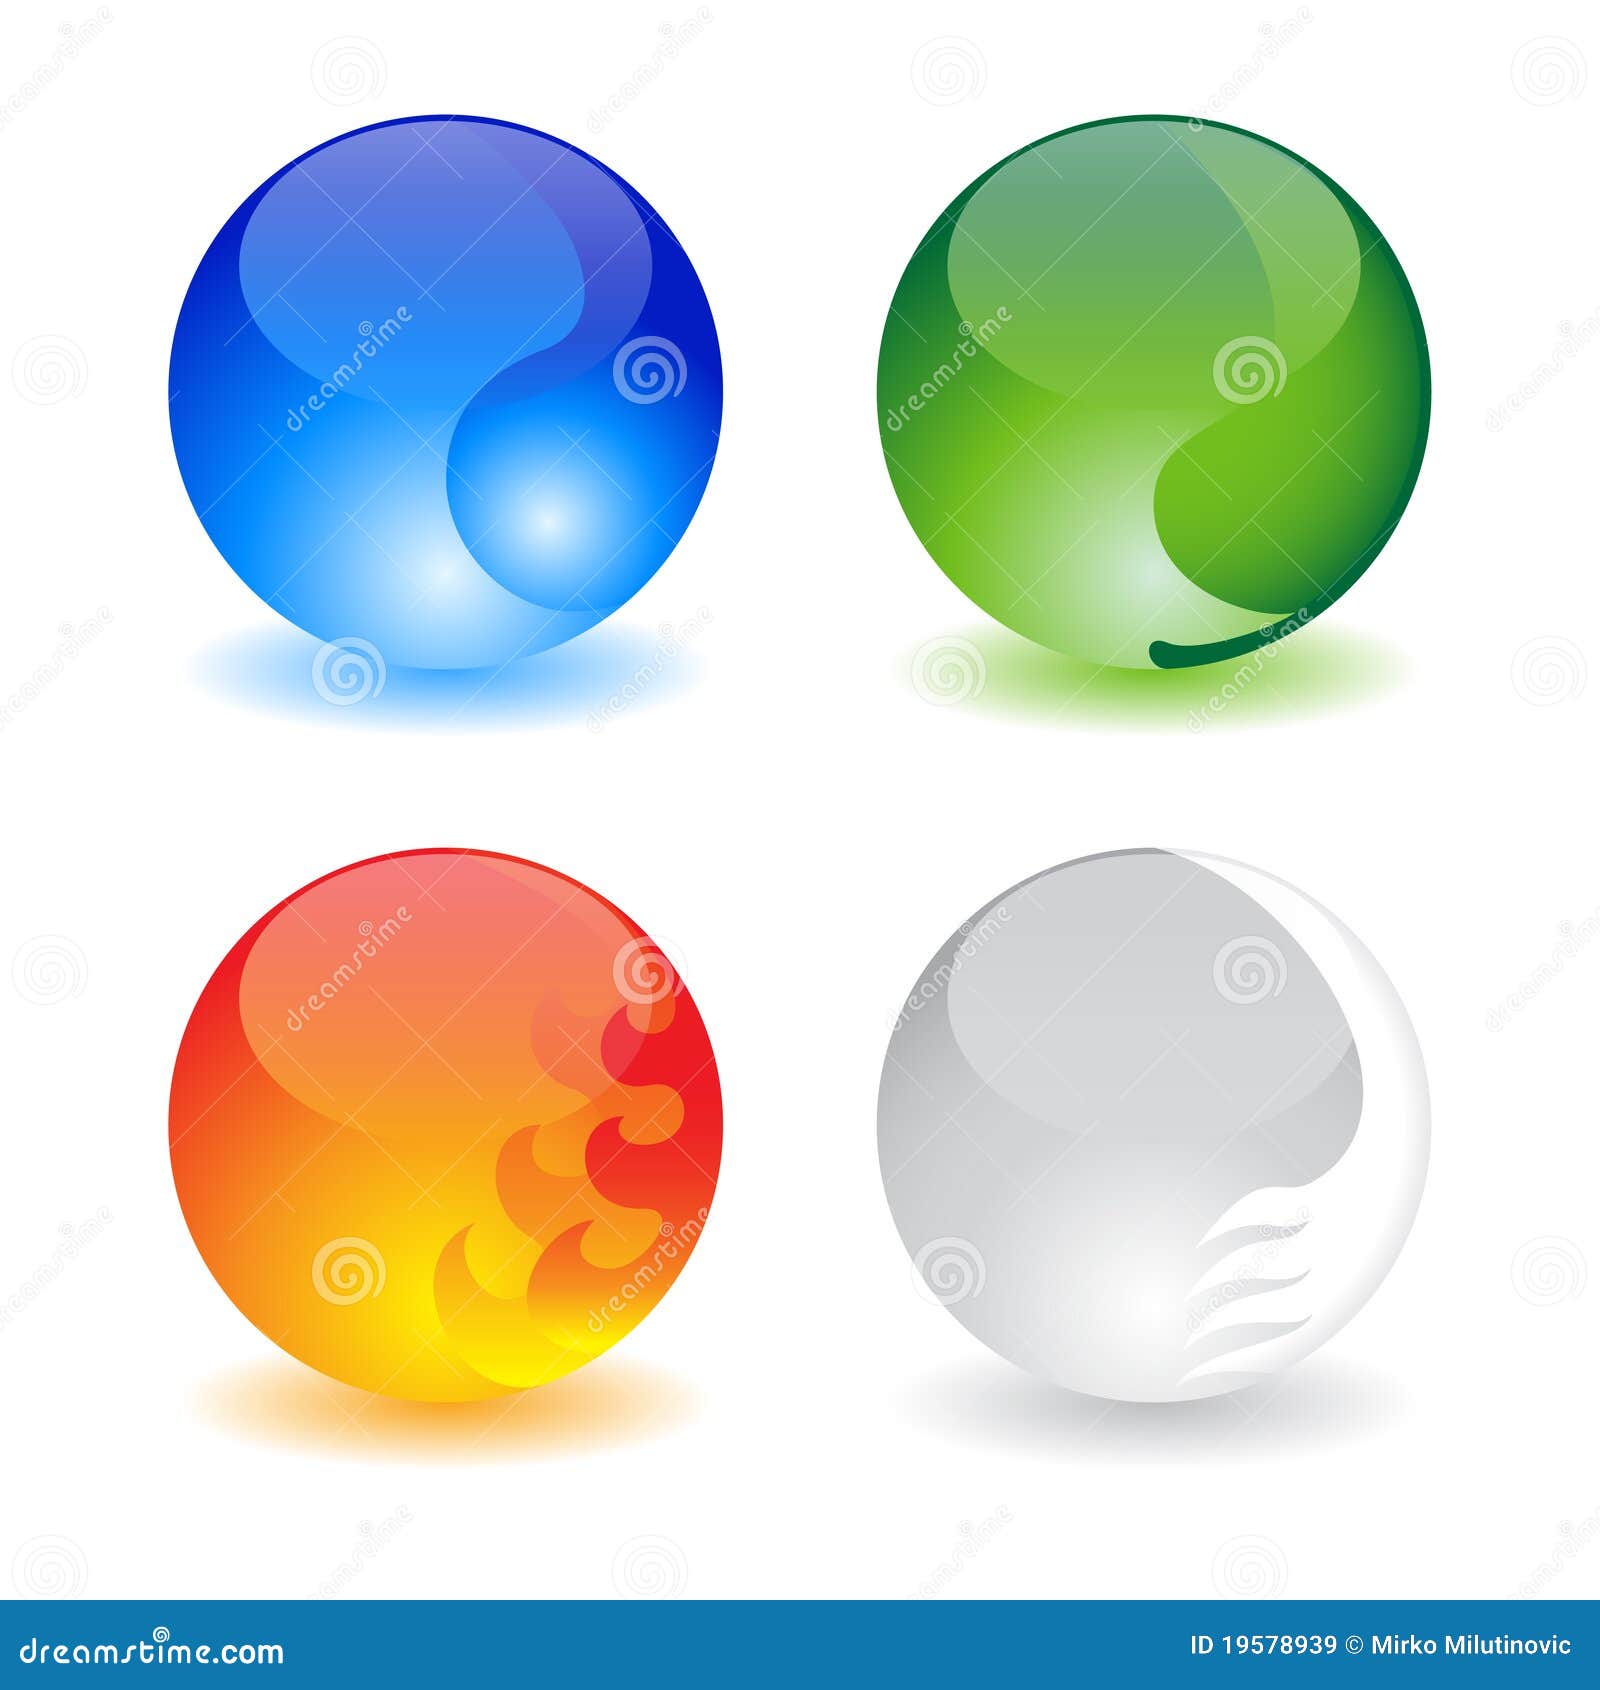 Quattro sfere che rappresentano quattro elementi (acqua, fuoco, terra ed aria)